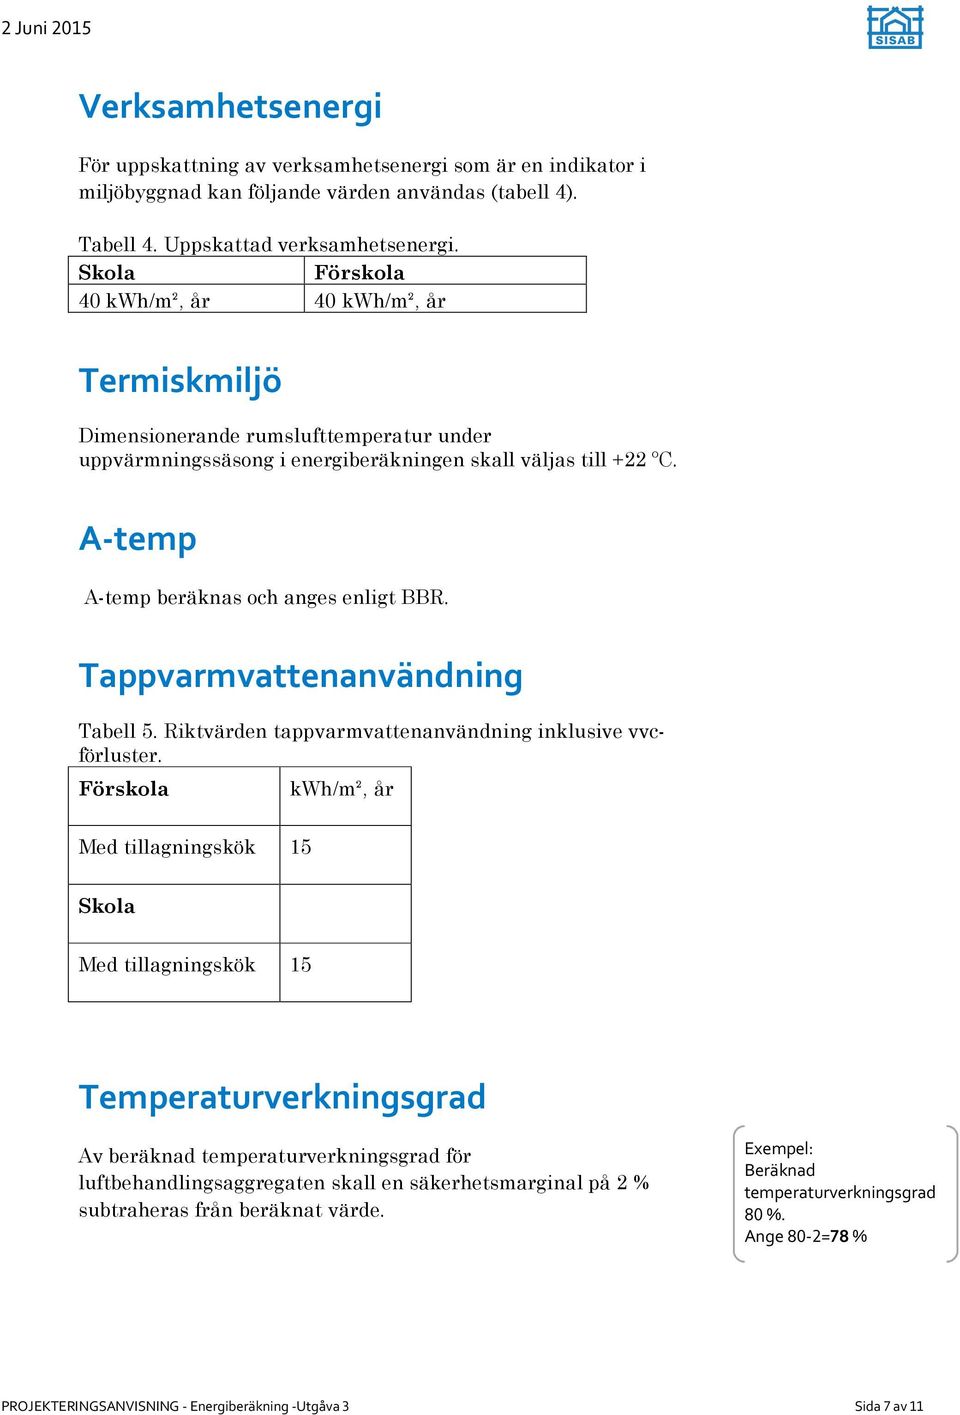 A-temp A-temp beräknas och anges enligt BBR. Tappvarmvattenanvändning Tabell 5. Riktvärden tappvarmvattenanvändning inklusive vvcförluster.